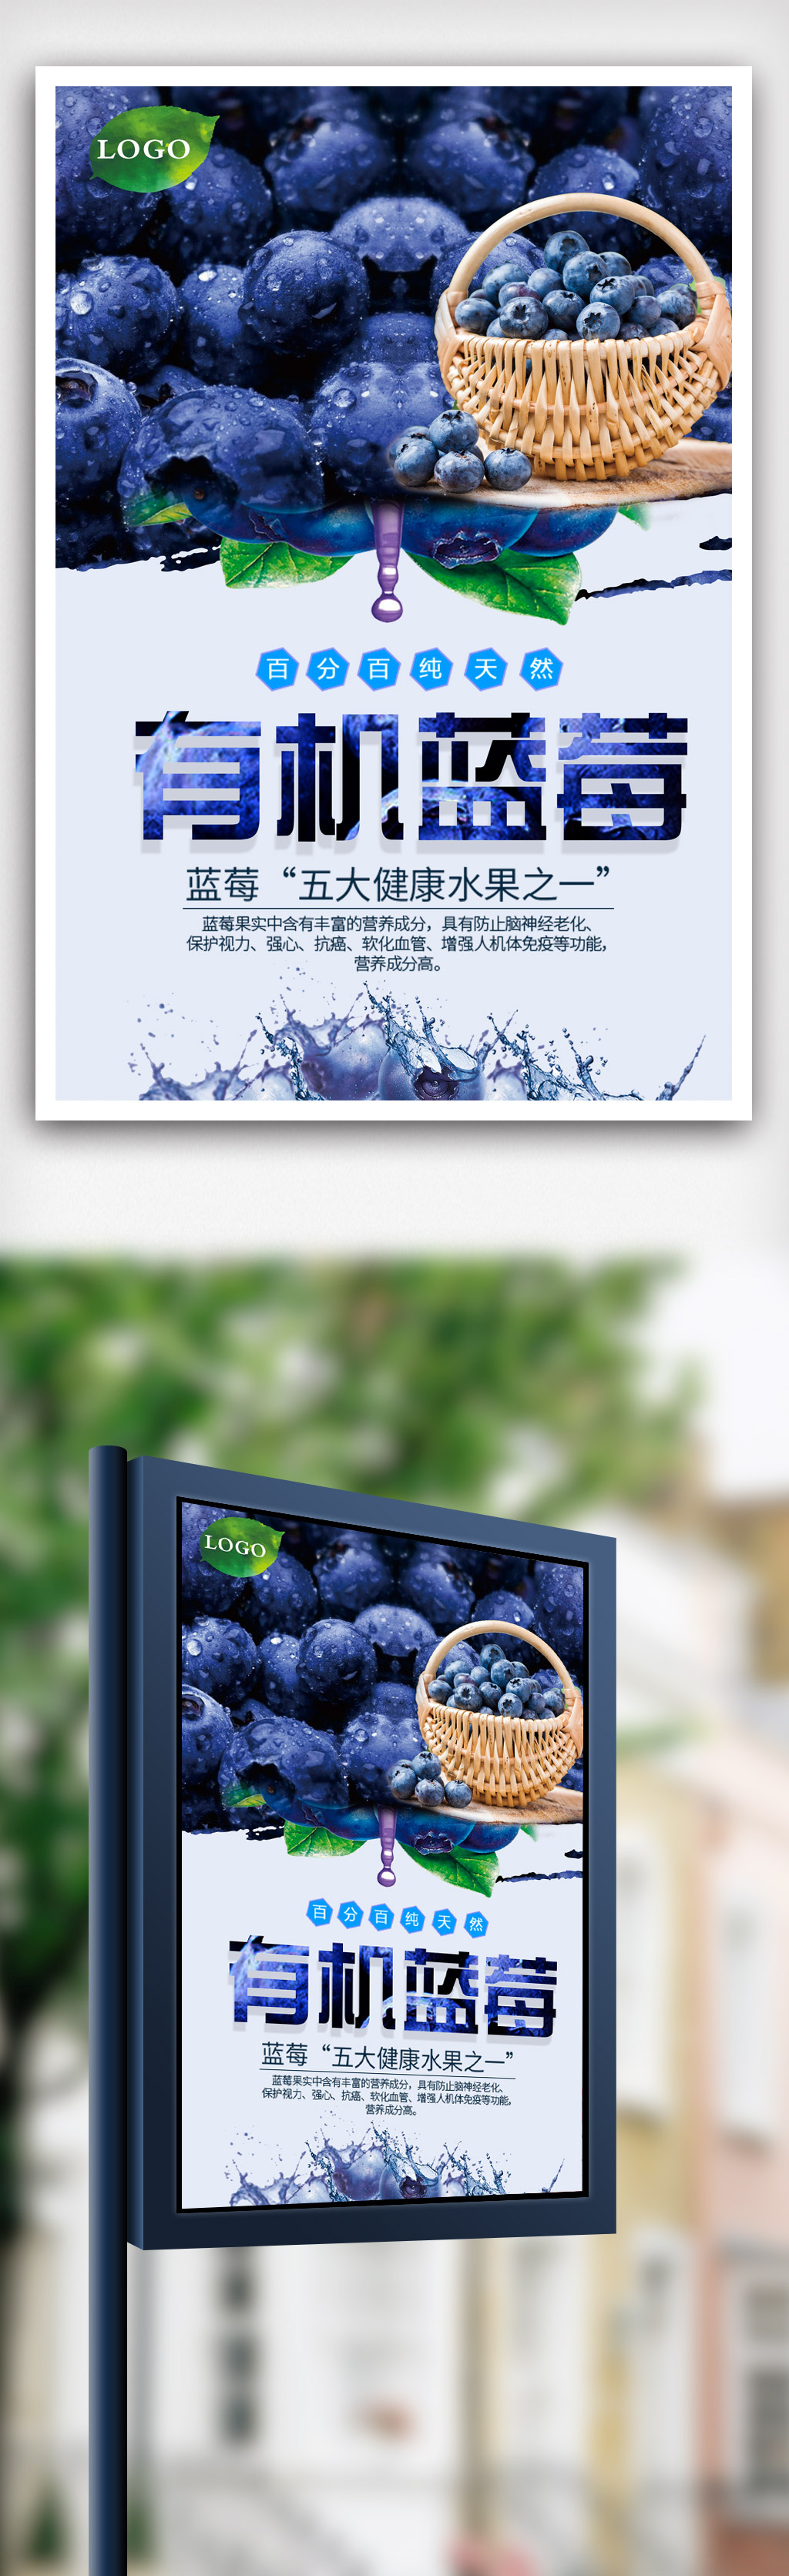 创意有机蓝莓水果海报.psd图片